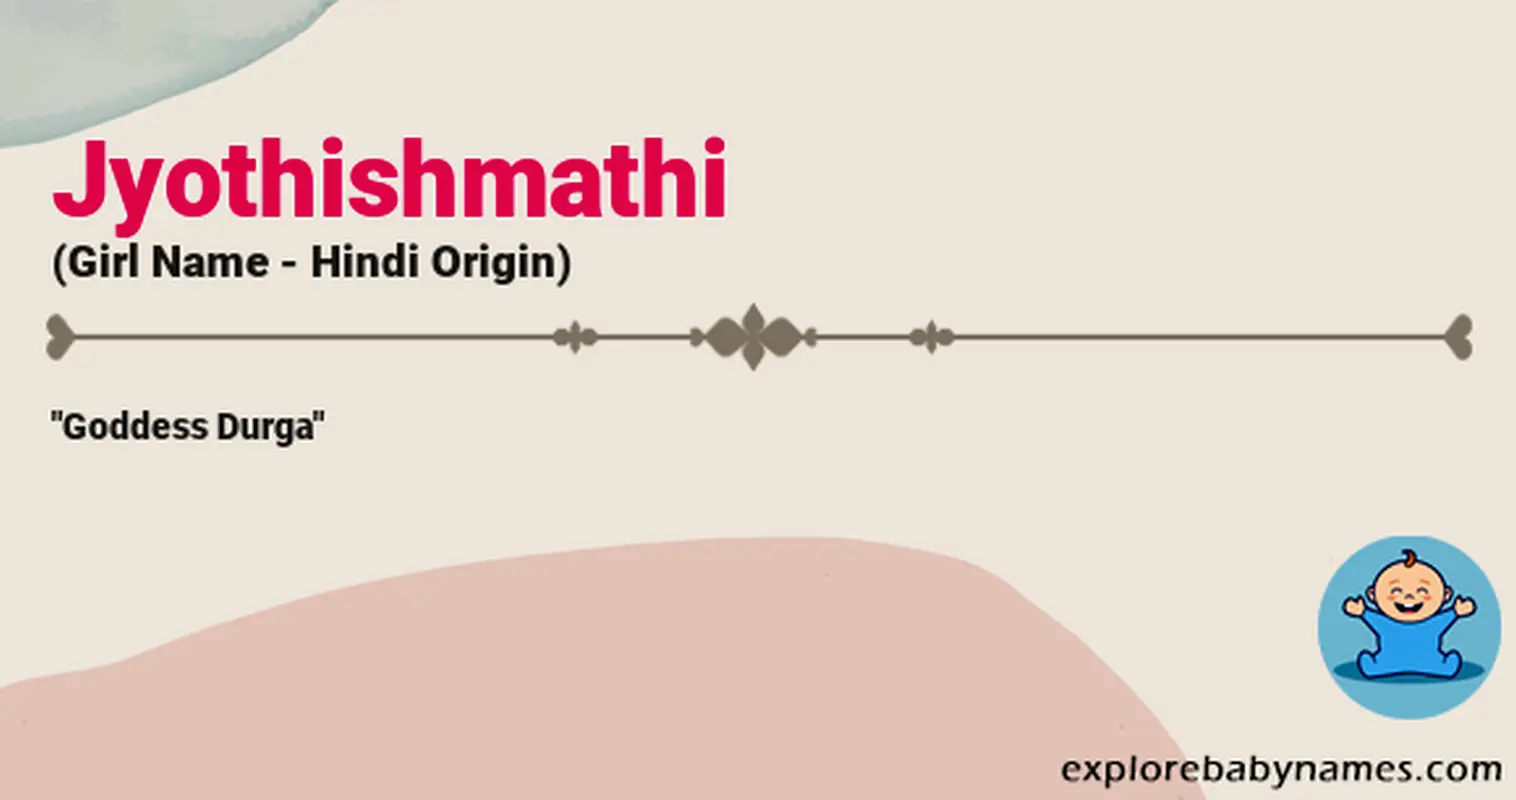 Meaning of Jyothishmathi